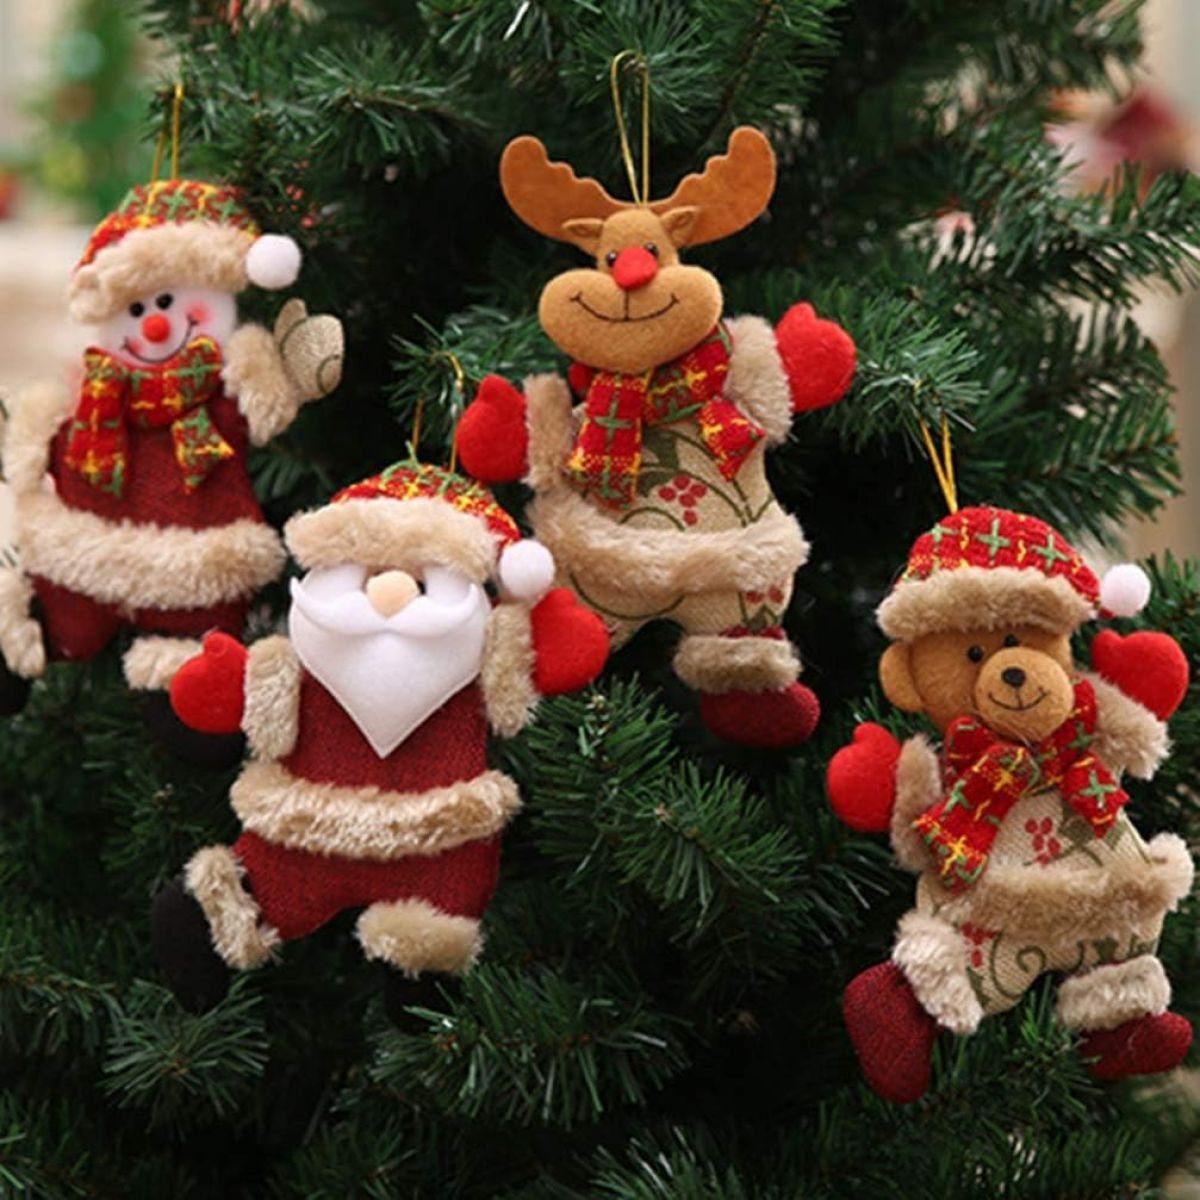 Jormftte Weihnachtsfigur 3 stücke Weihnachtsbär Weihnachtsbaum Hängen Party Ornamente für